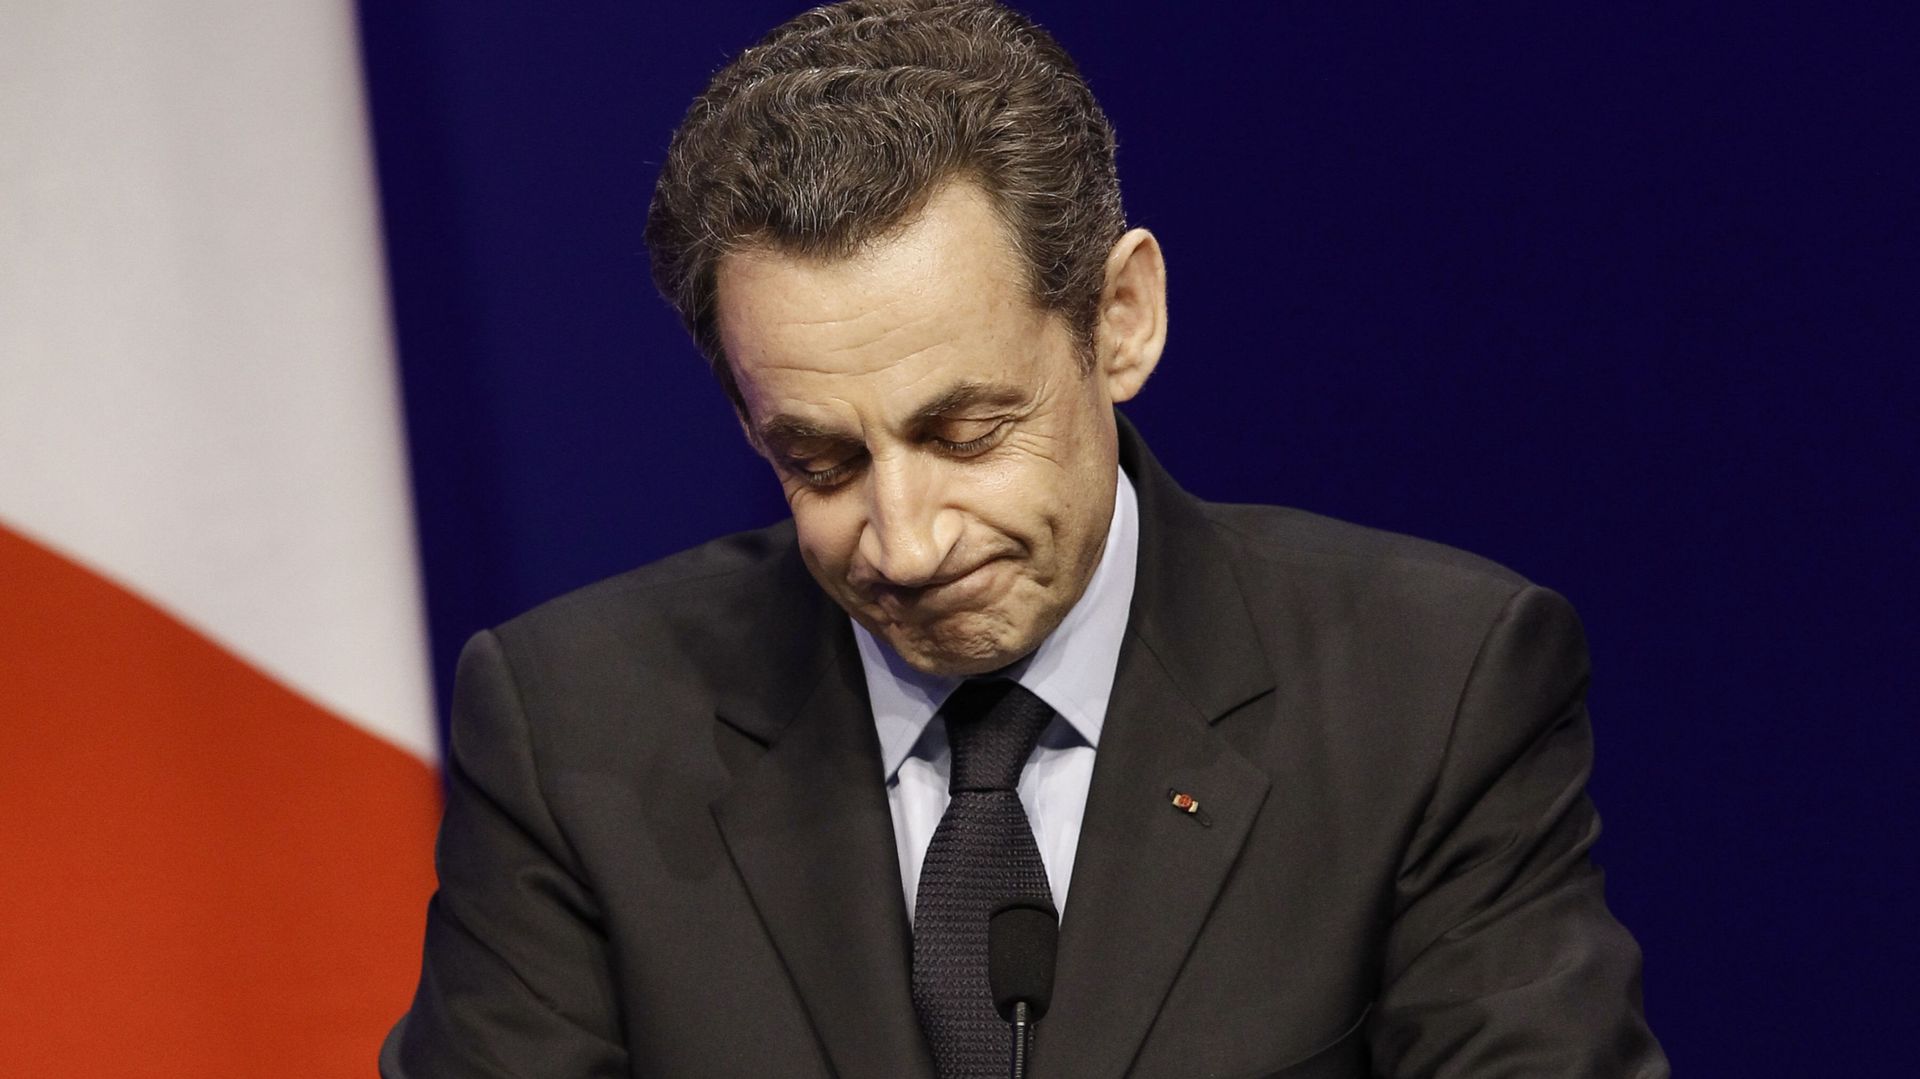 Jean-François Kahn à propos de Nicolas Sarkozy: "Il est dans la merde"